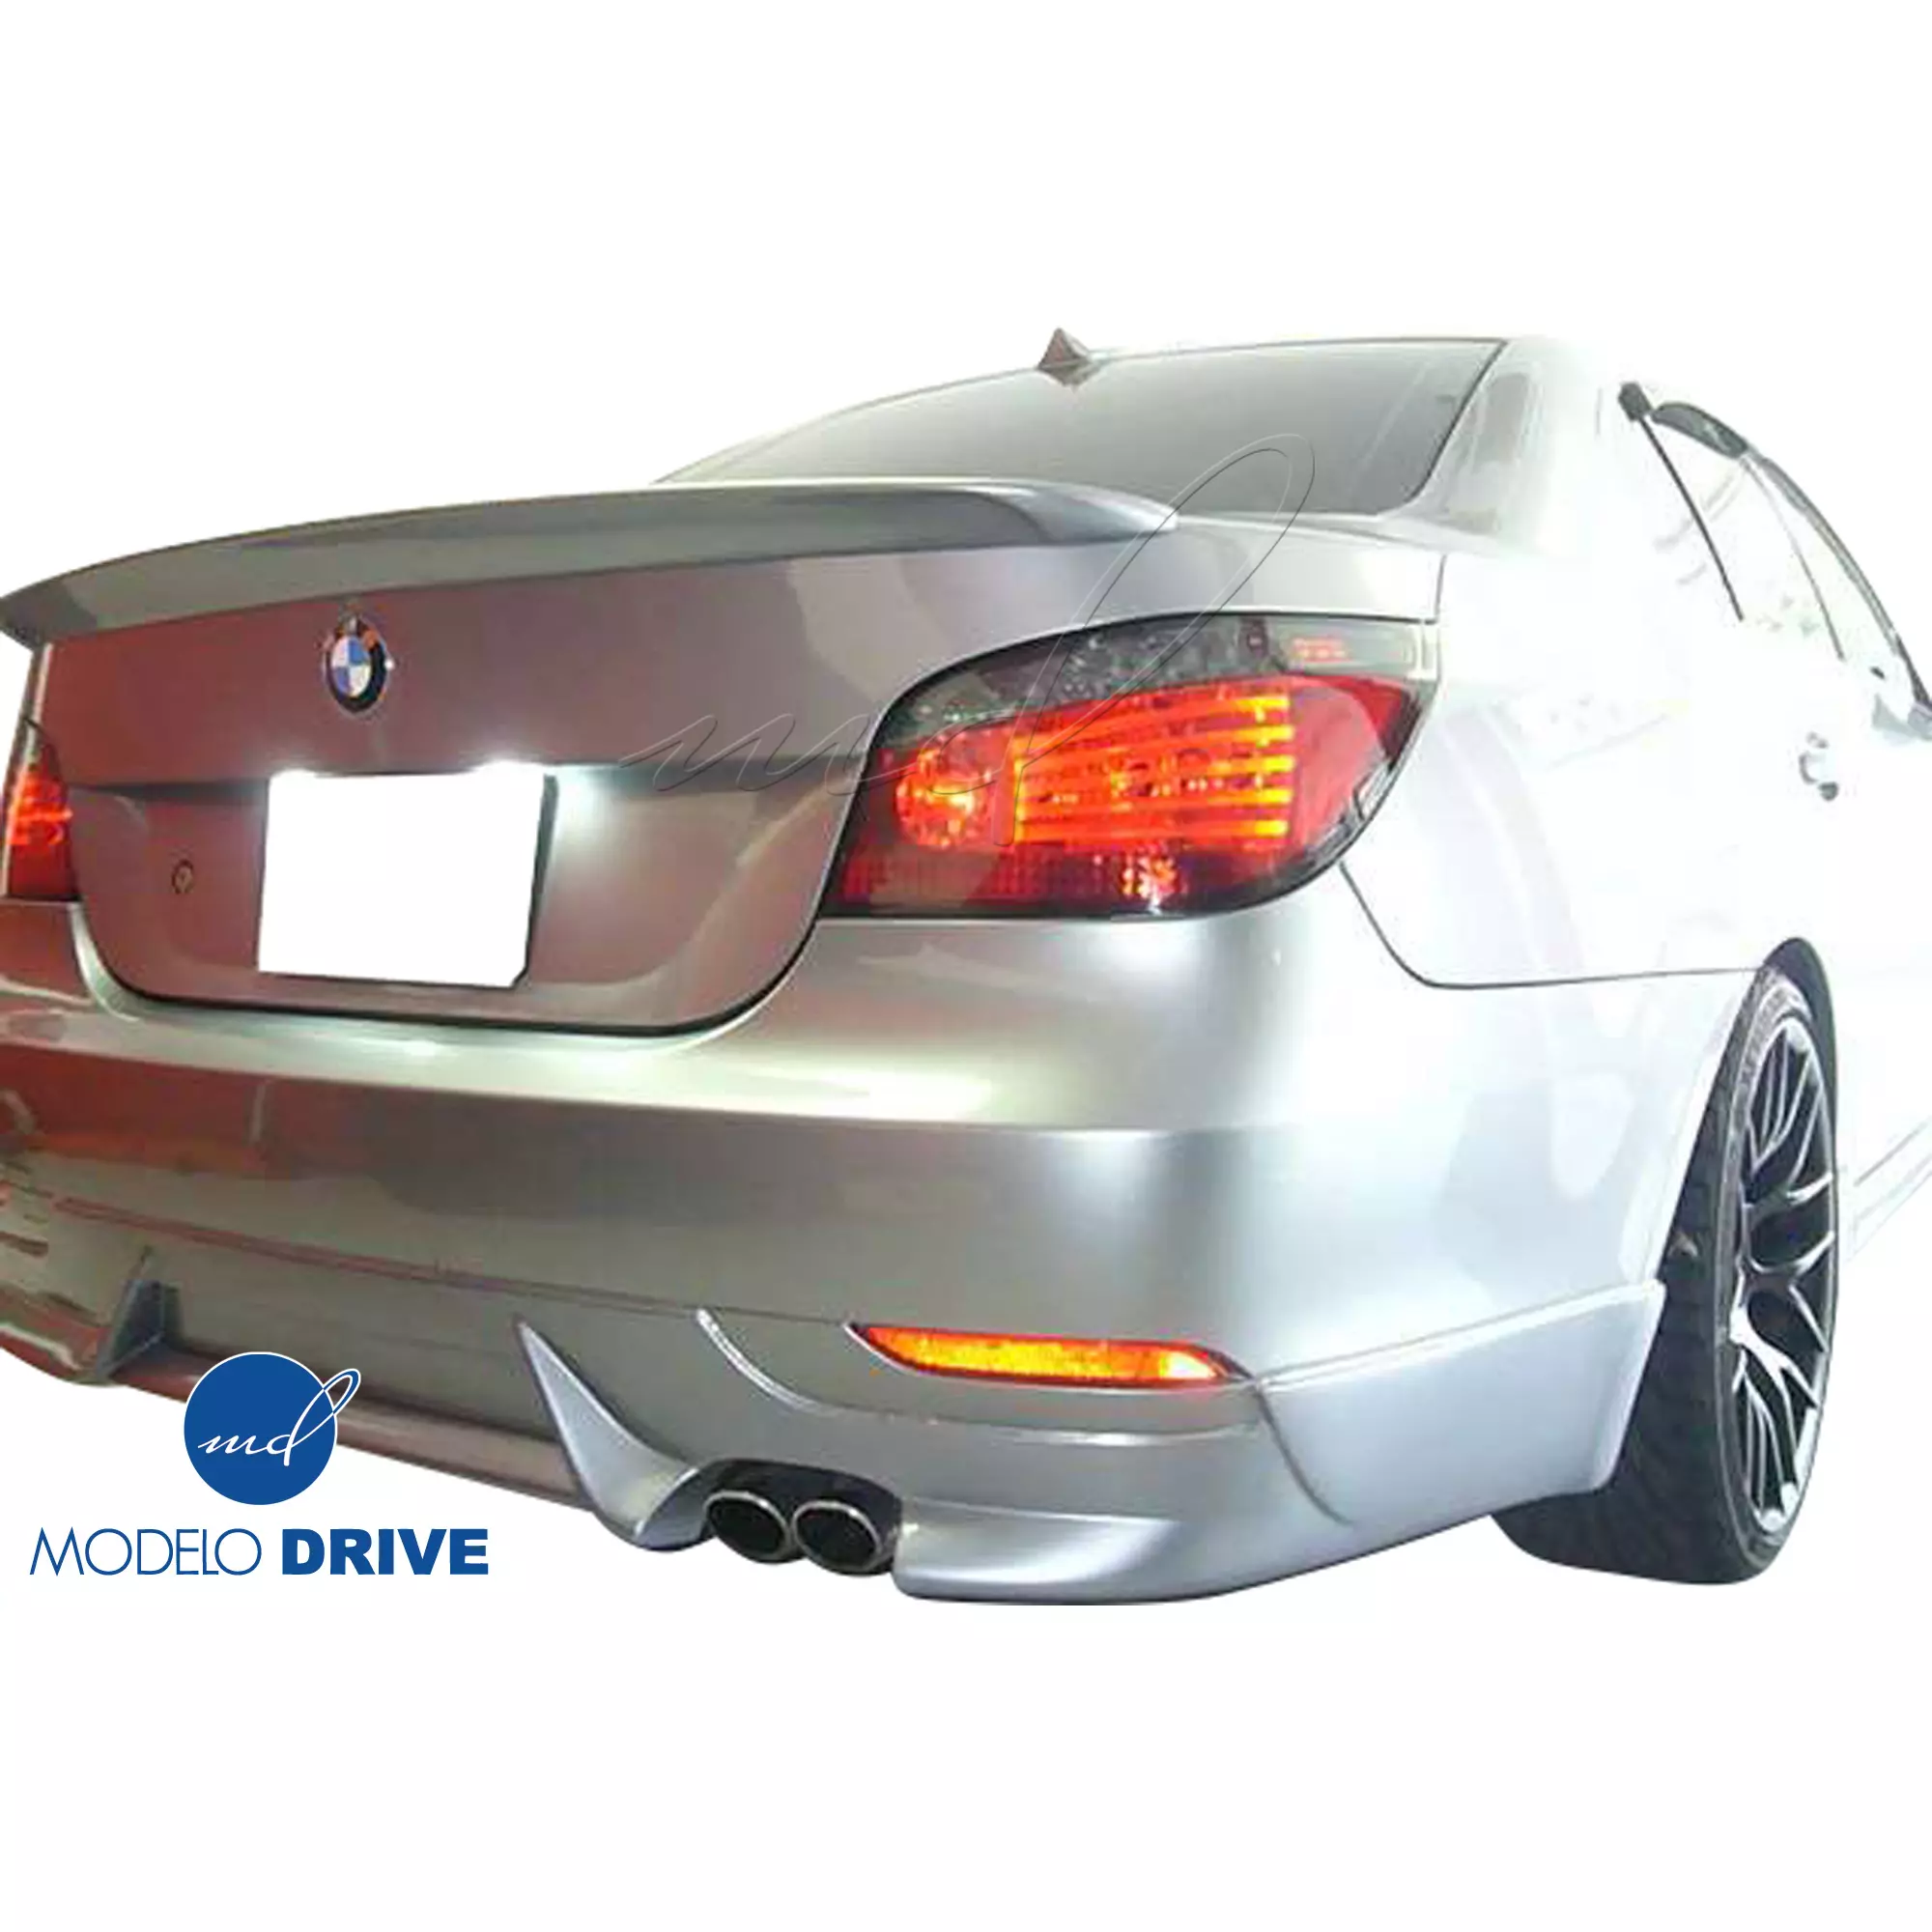 ModeloDrive FRP ASCH Body Kit 4pc > BMW 5-Series E60 2004-2010 > 4dr - Image 17